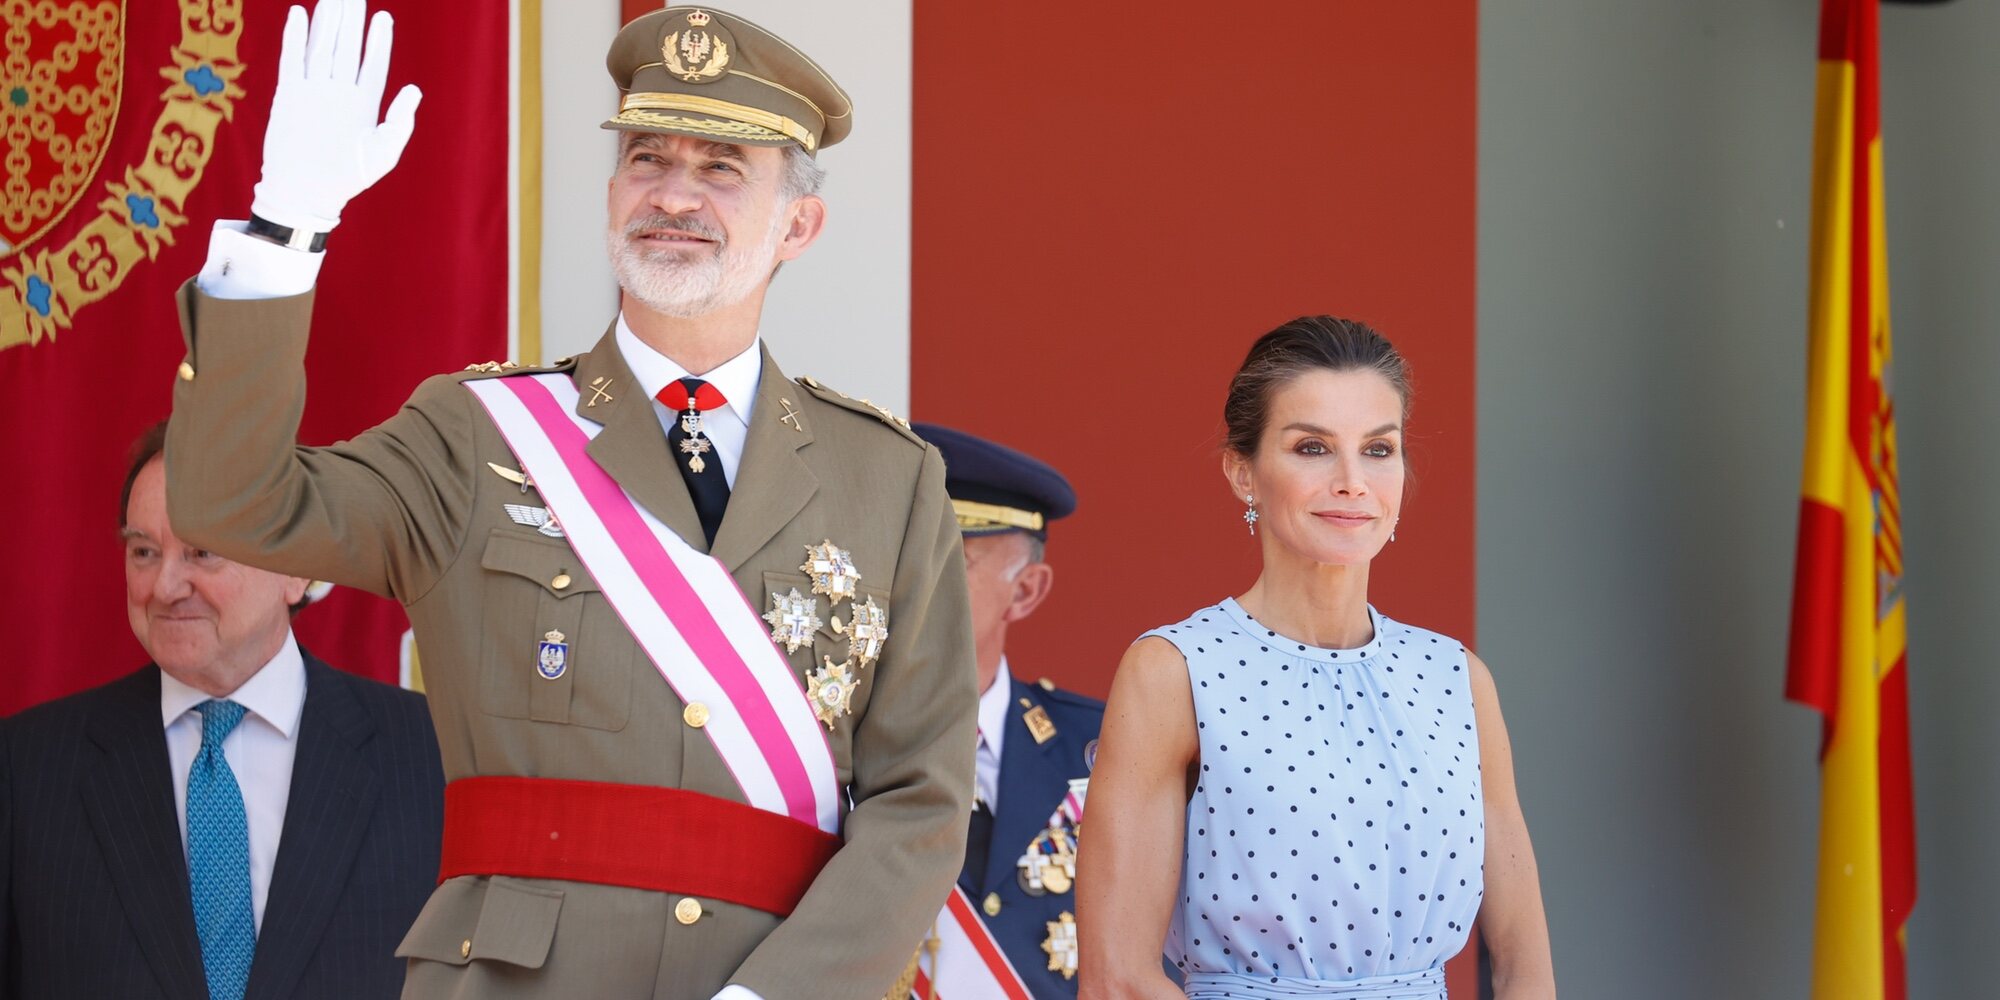 El Día de las Fuerzas Armadas recupera su esplendor con el Rey Felipe y la Reina Letizia como protagonistas